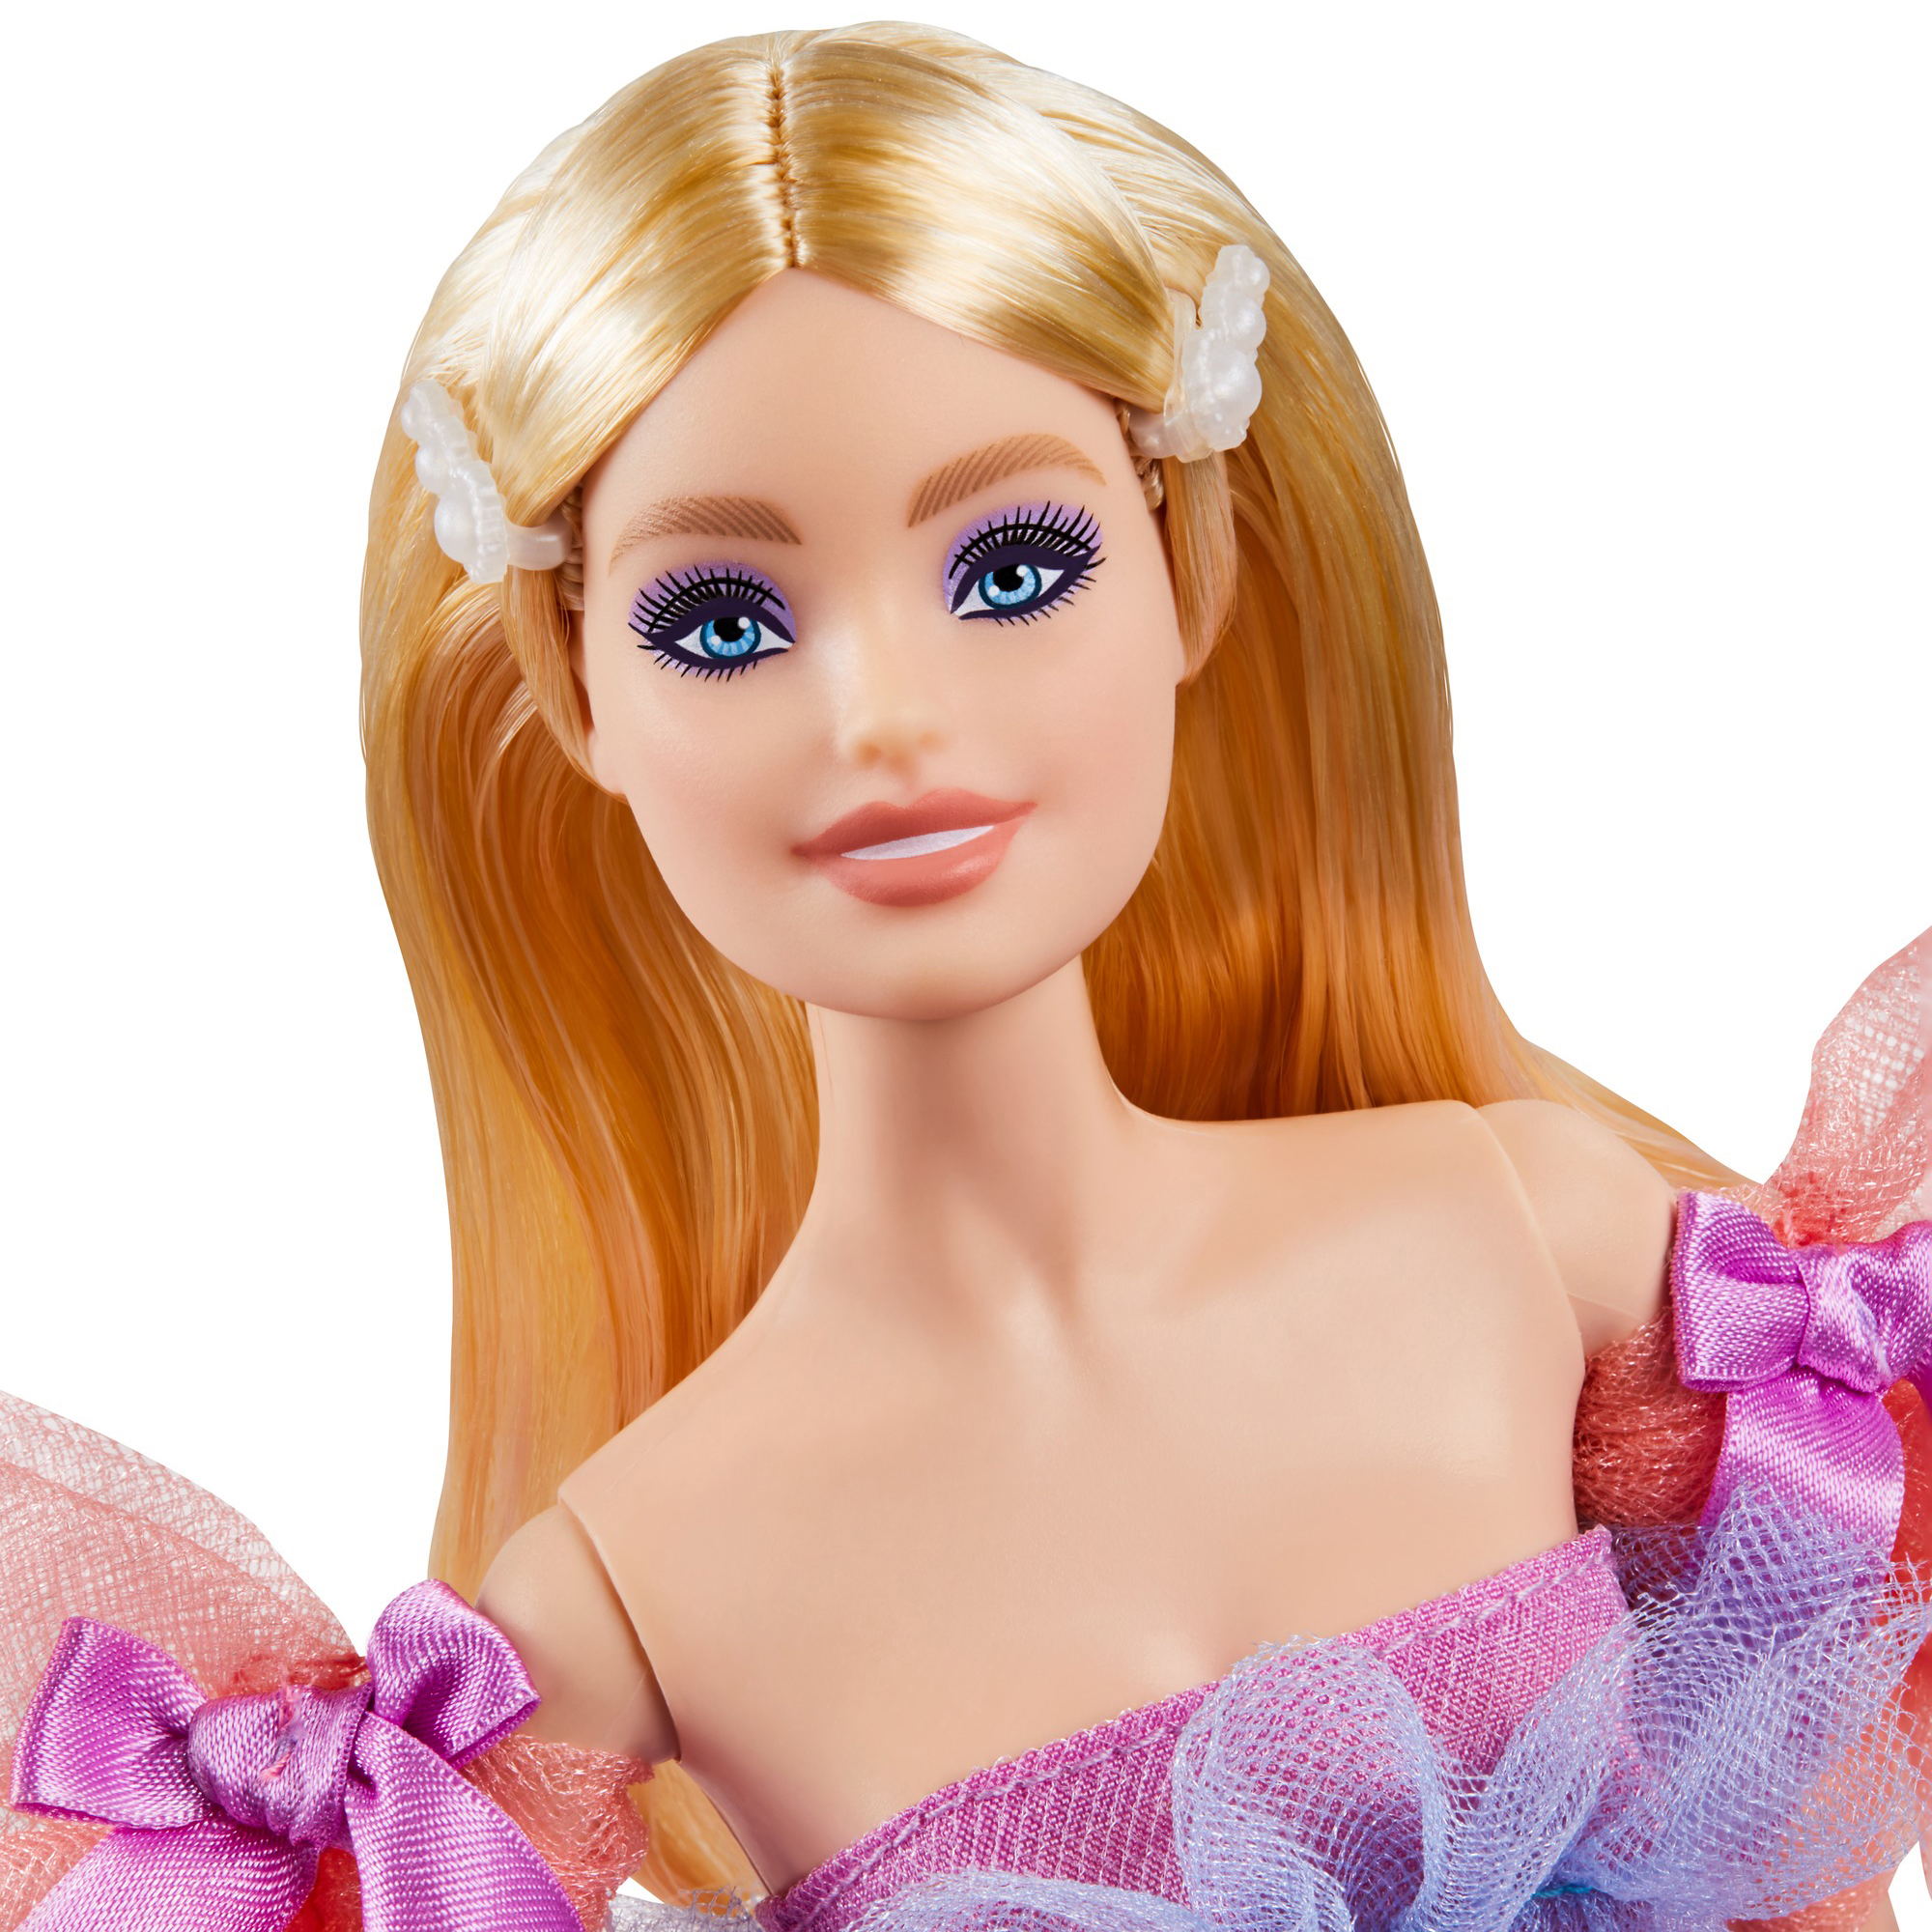 Barbie buon compleanno con abito lungo e accessori in Vendita